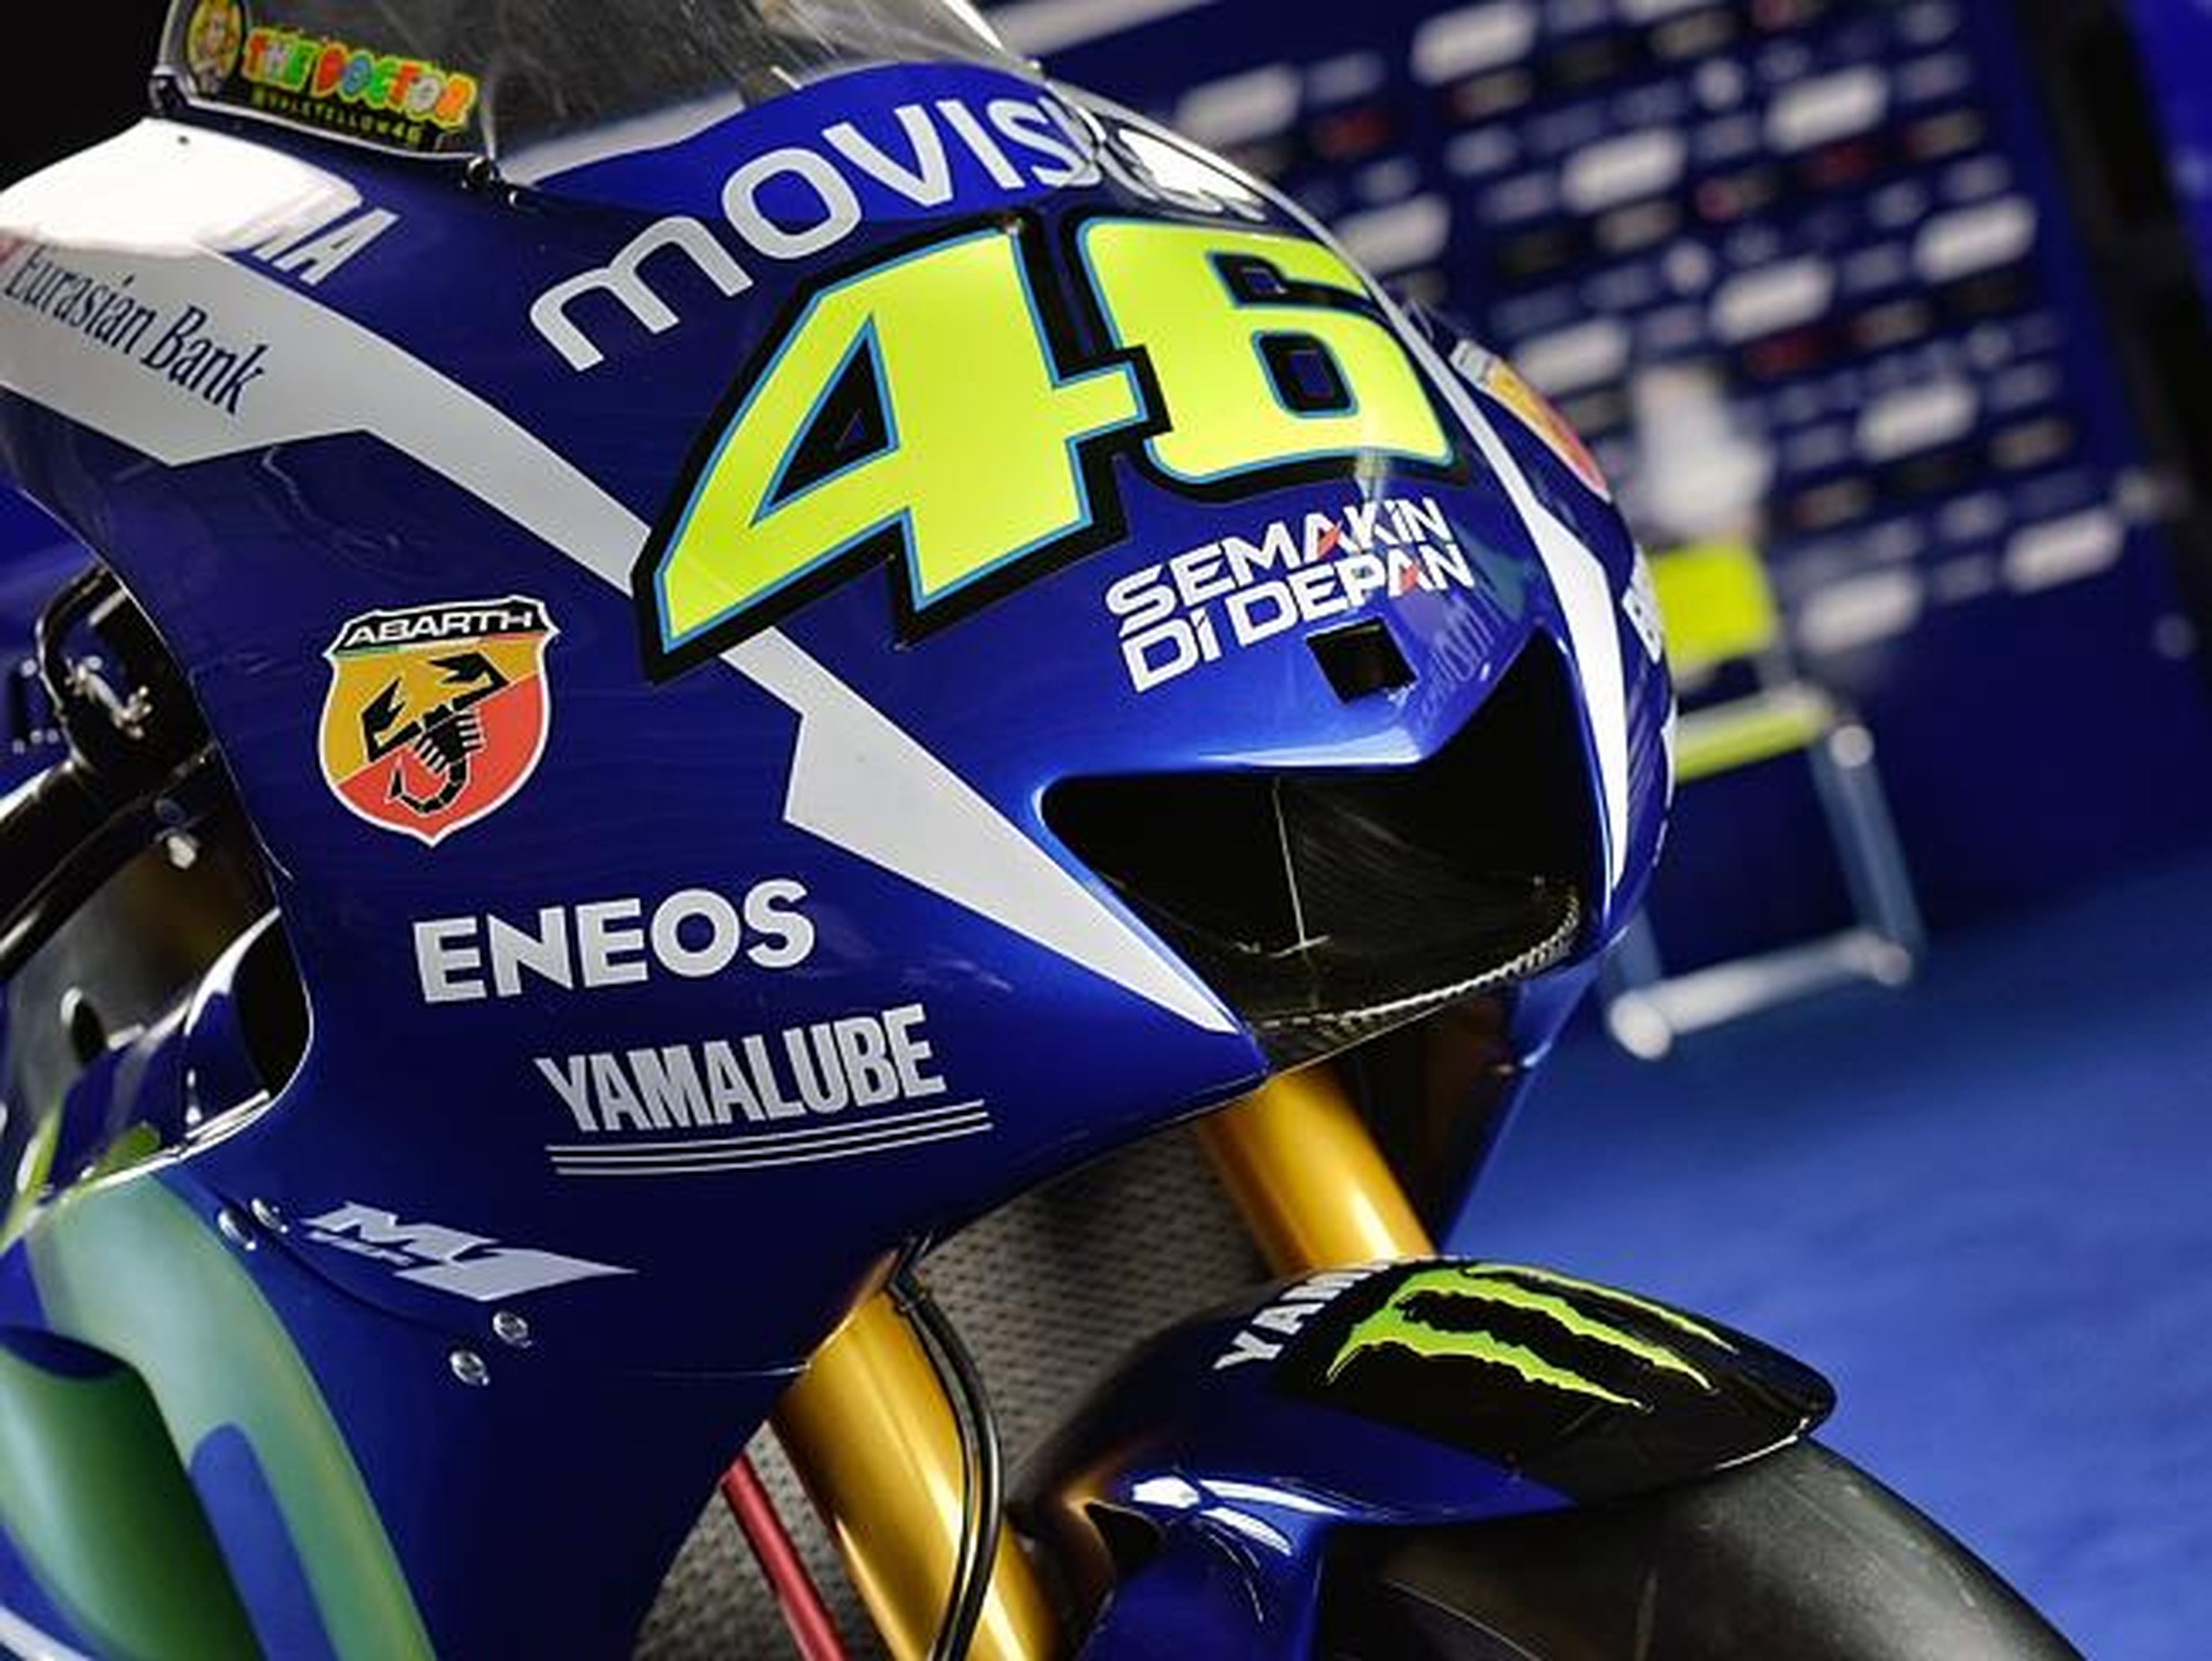 La empresa de Rossi hará el merchandising de Yamaha